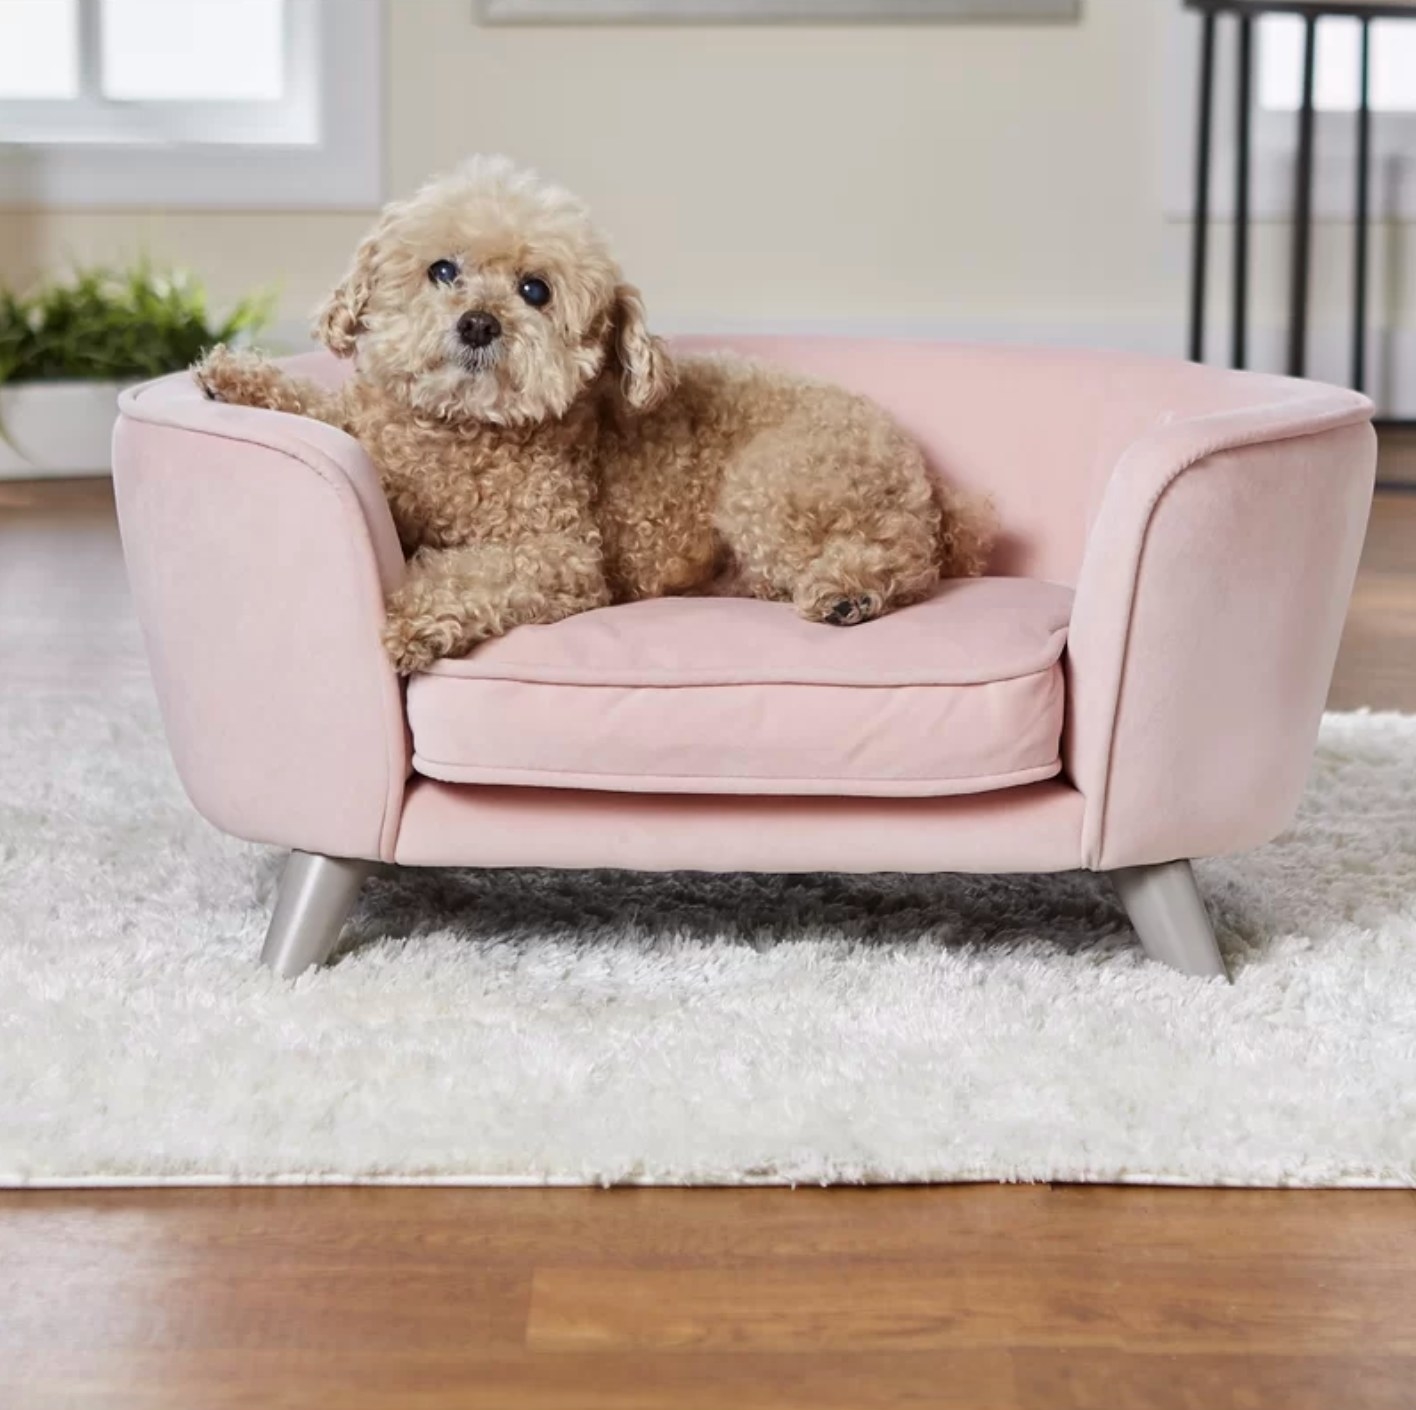 The dog sofa in blush